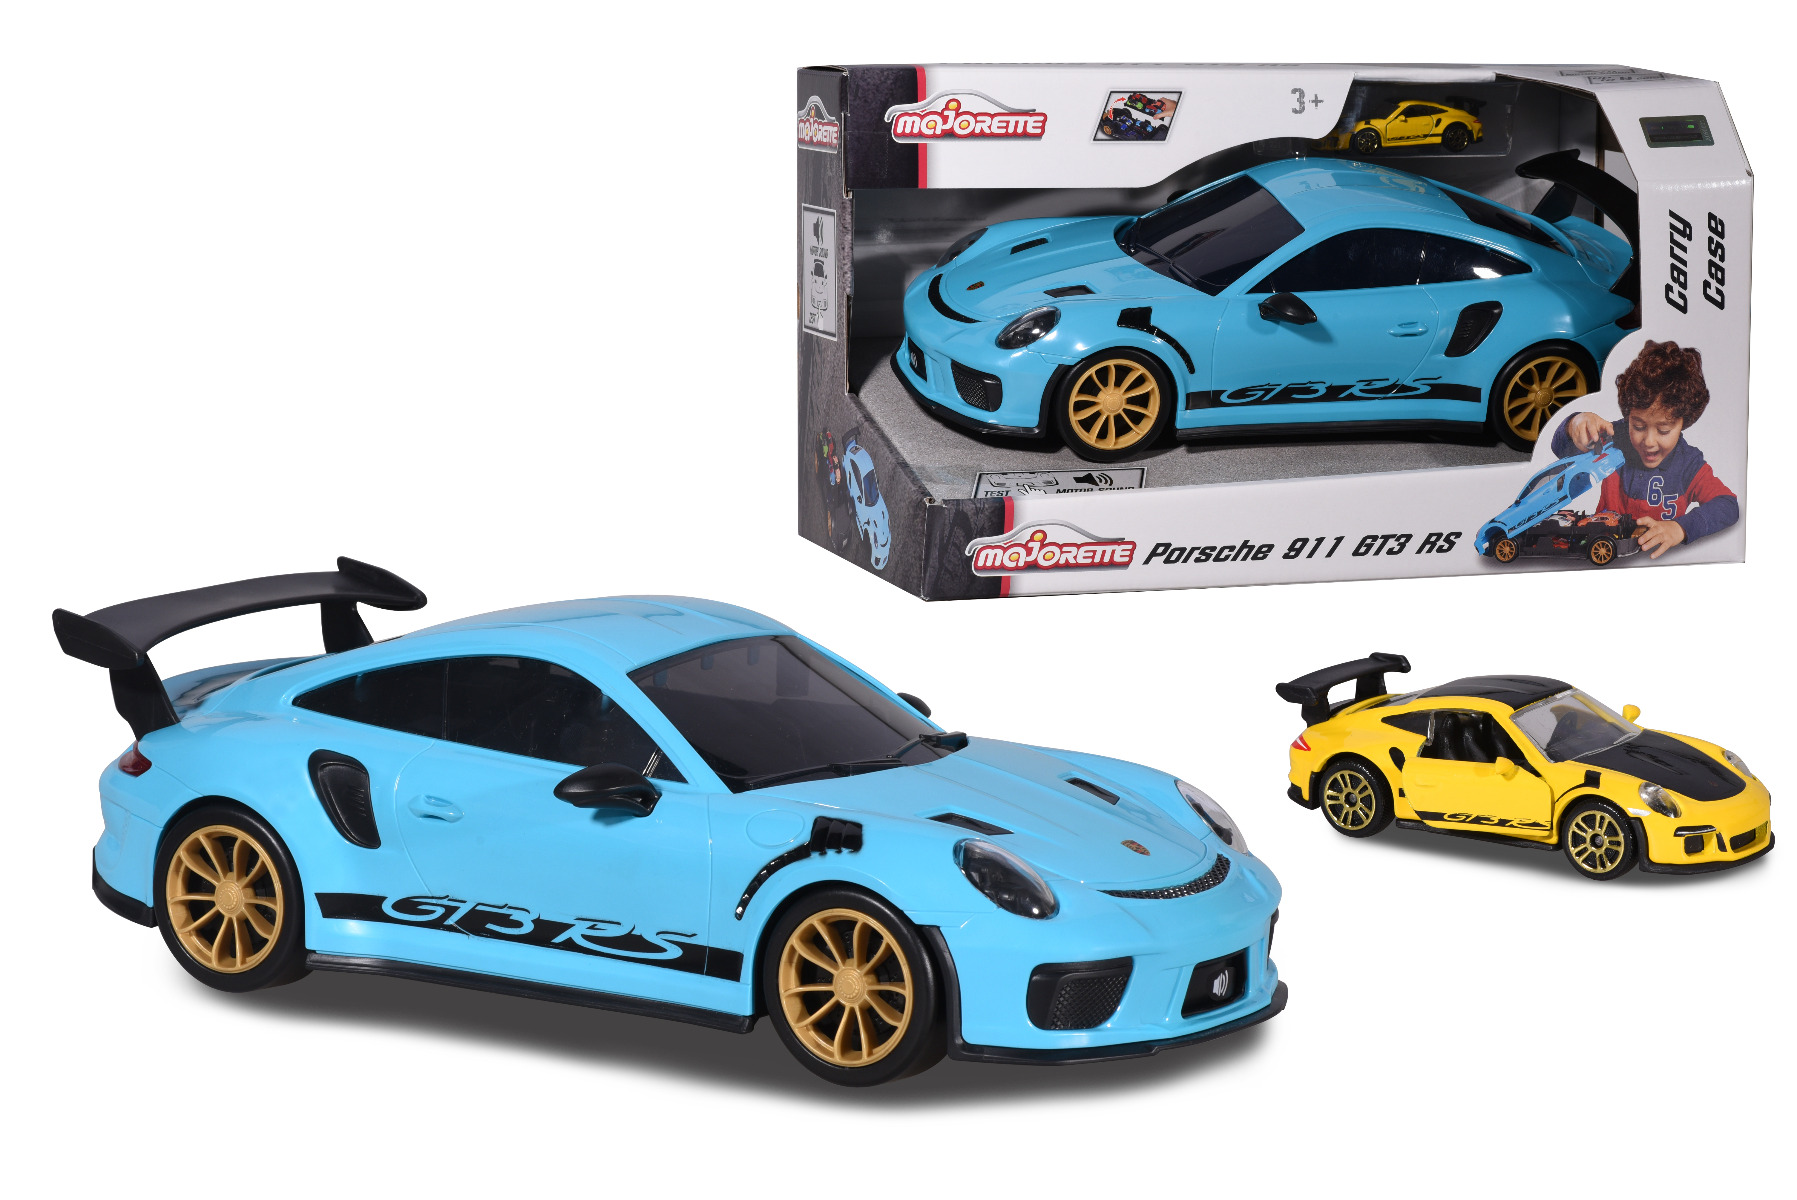 Miniature majorette Porsche 911 GT3 RS color changers - Majorette